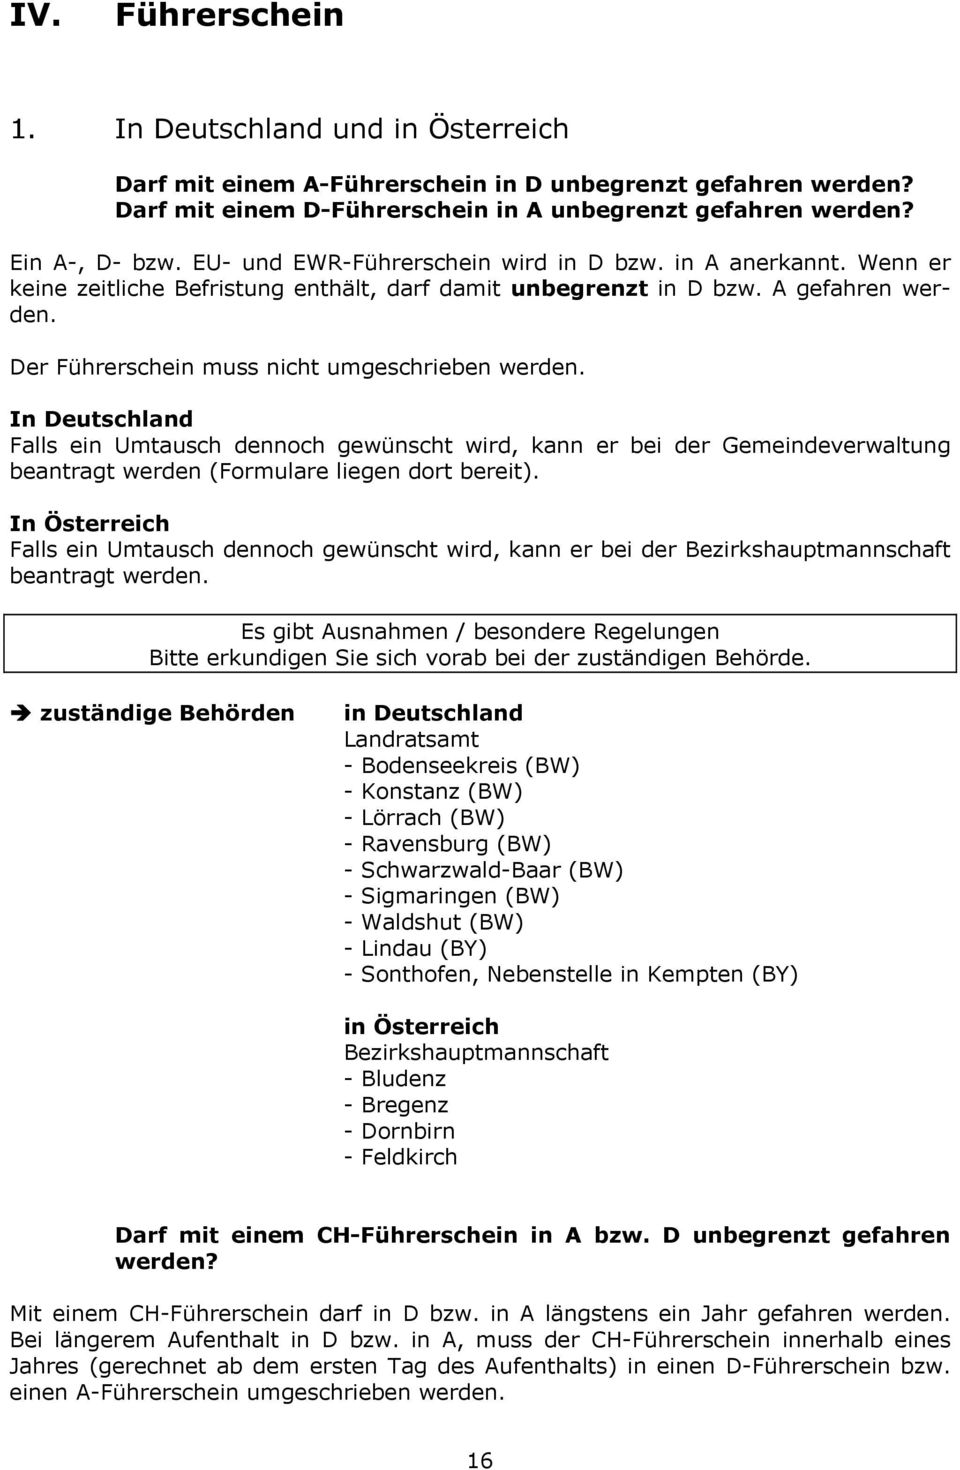 In Deutschland Falls ein Umtausch dennoch gewünscht wird, kann er bei der Gemeindeverwaltung beantragt werden (Formulare liegen dort bereit).